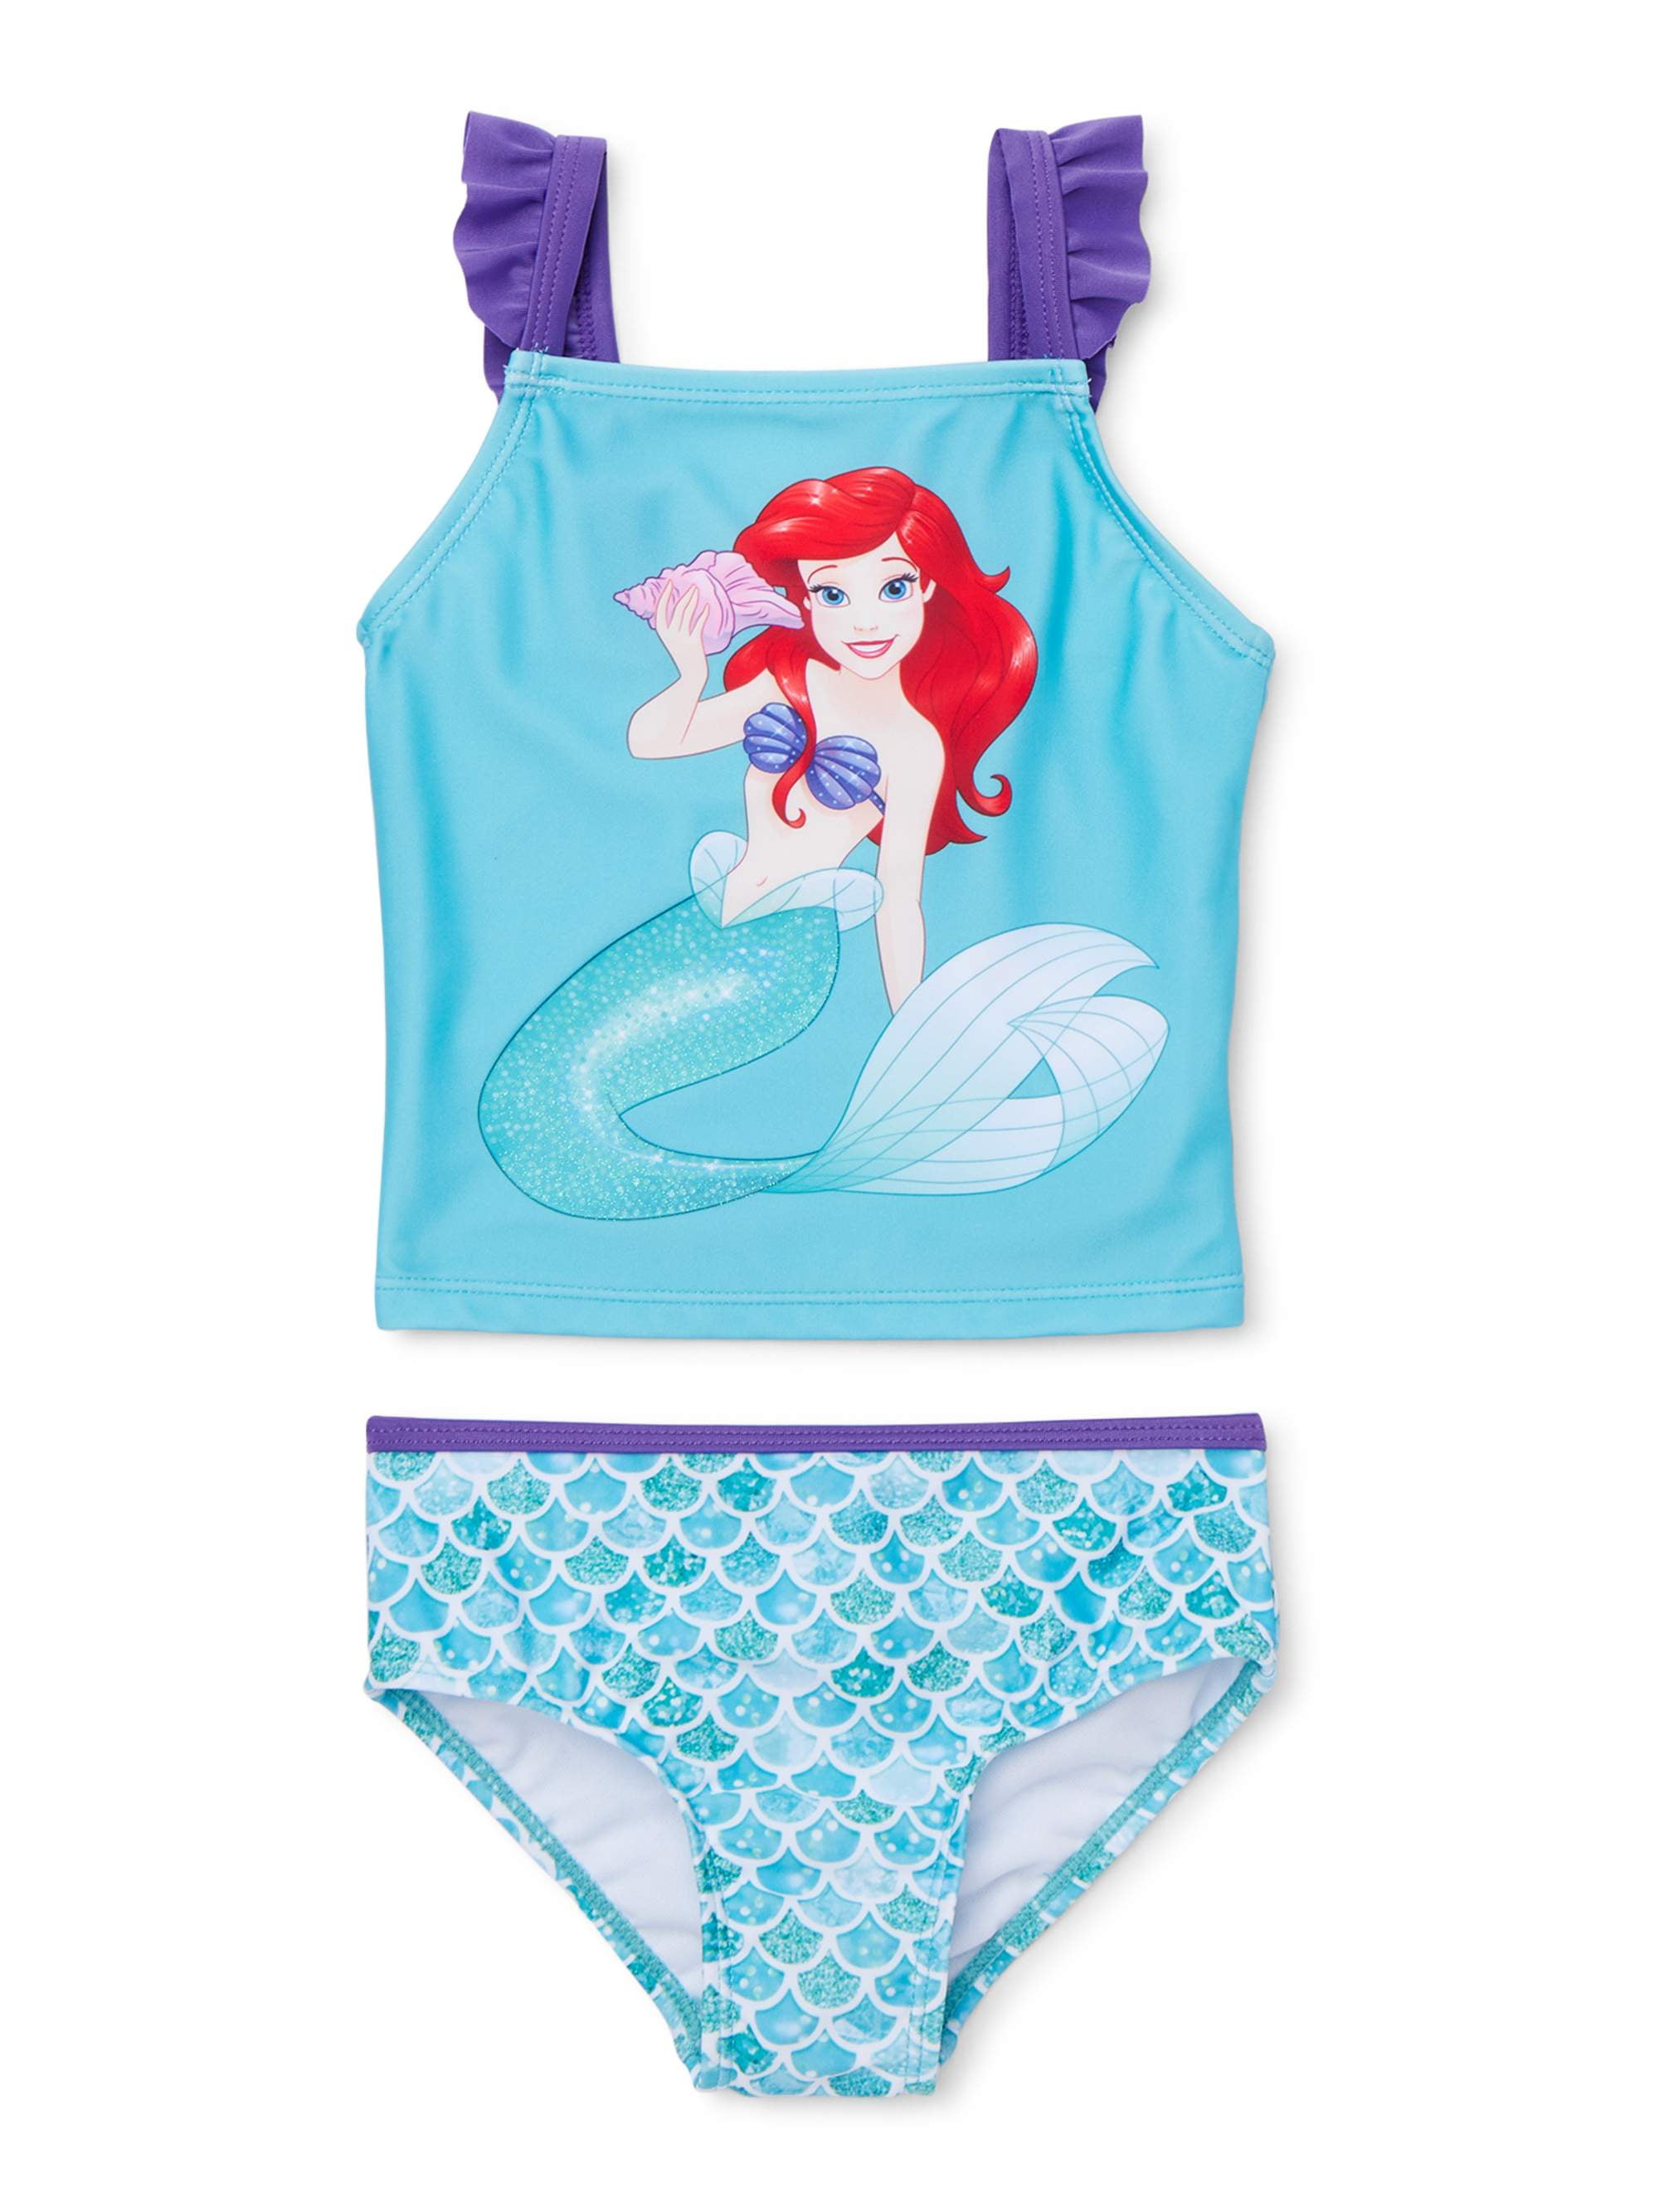 New Disney Baby Little Mermaid Swimming Costume Swimsuit & Skirt Set 18 months 